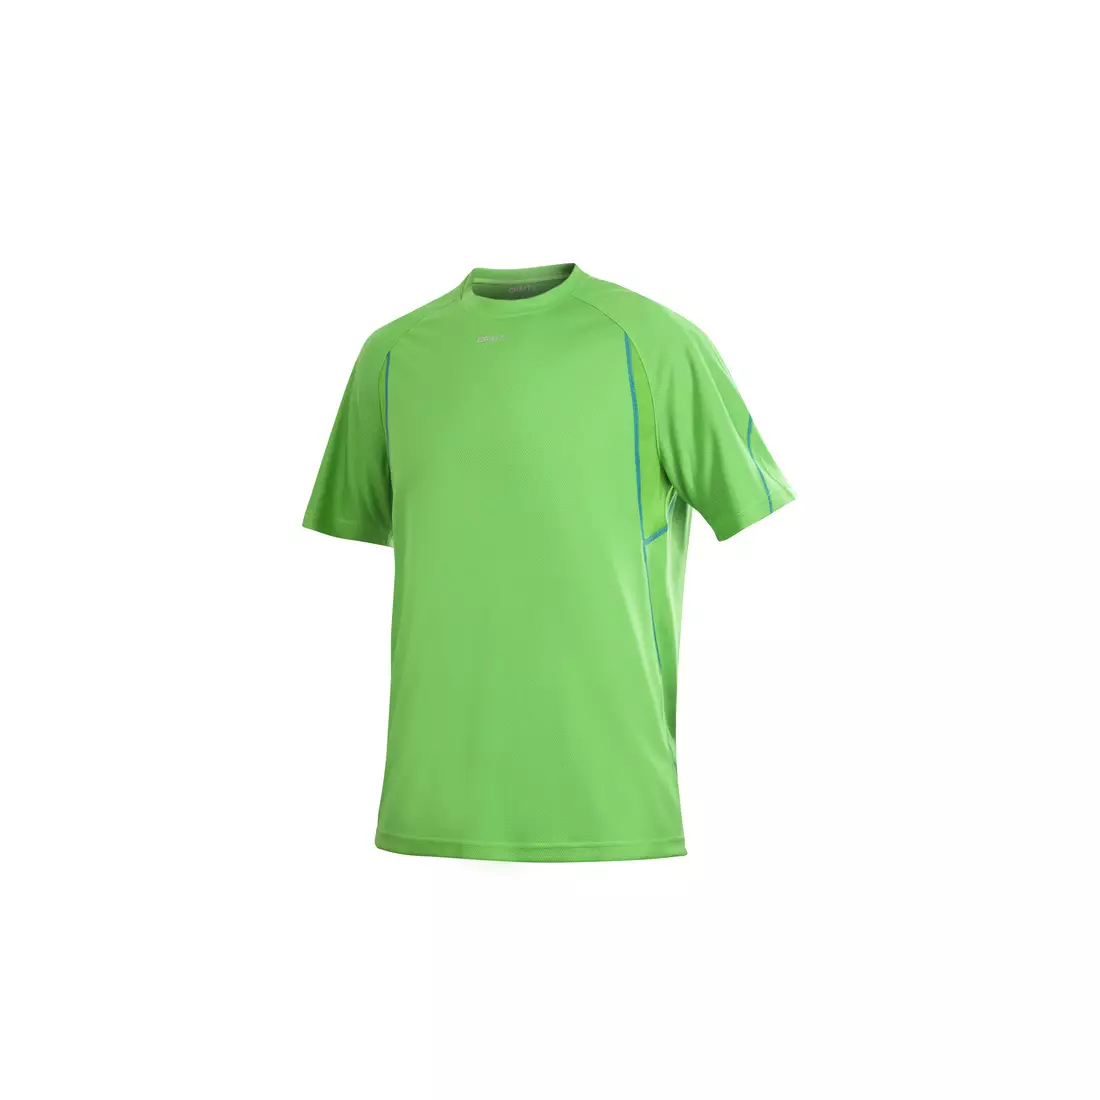 CRAFT ACTIVE RUN 1900655-2606 - pánské běžecké tričko